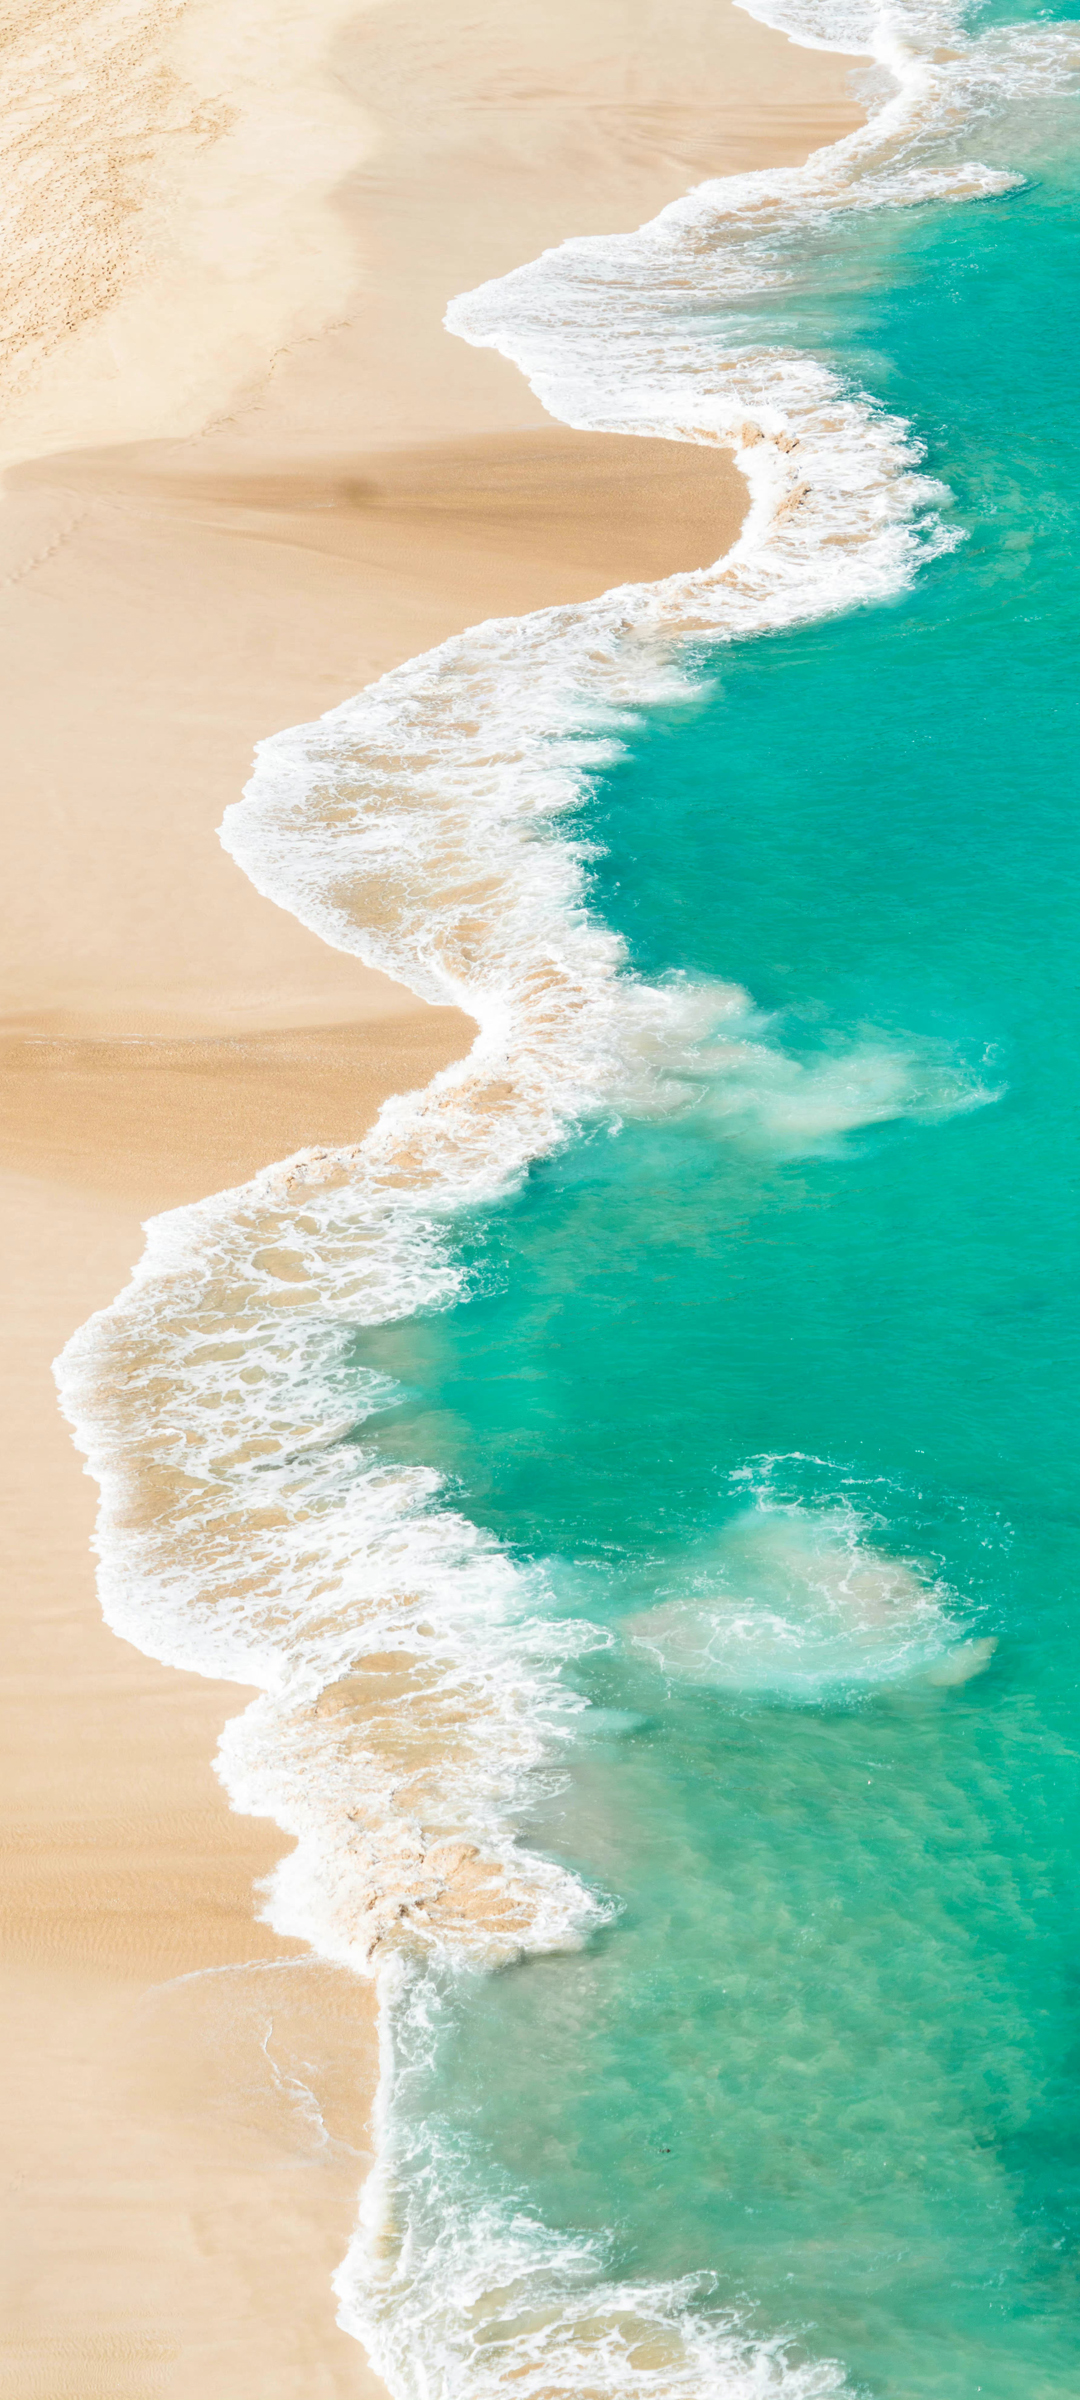 海边 海滩 沙滩风景手机壁纸